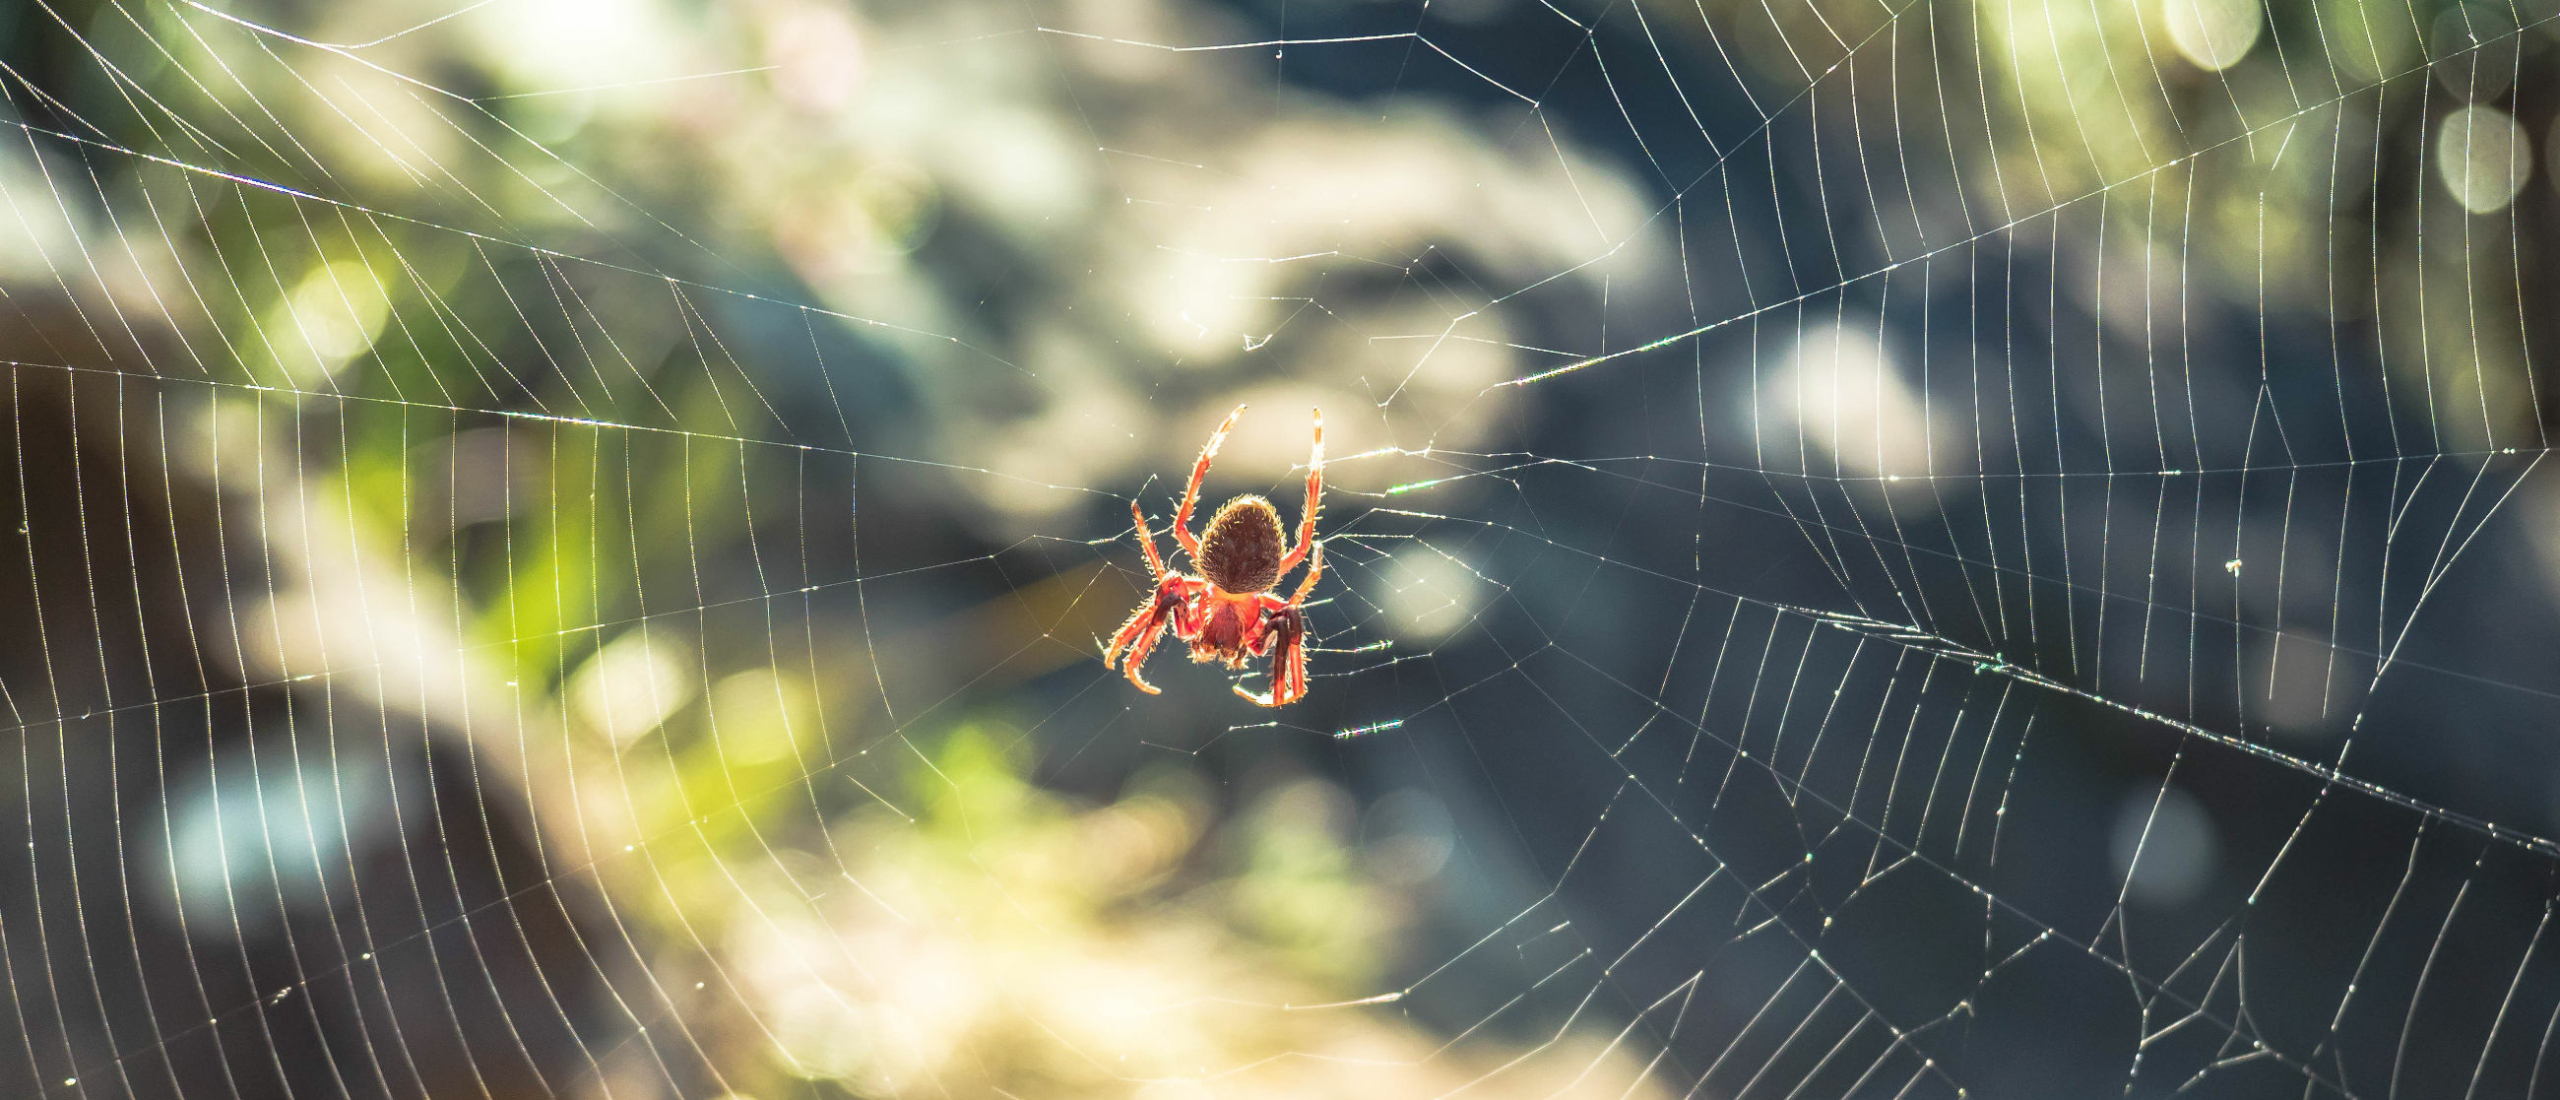 Spinnen verjagen: Waar kunnen spinnen niet tegen?